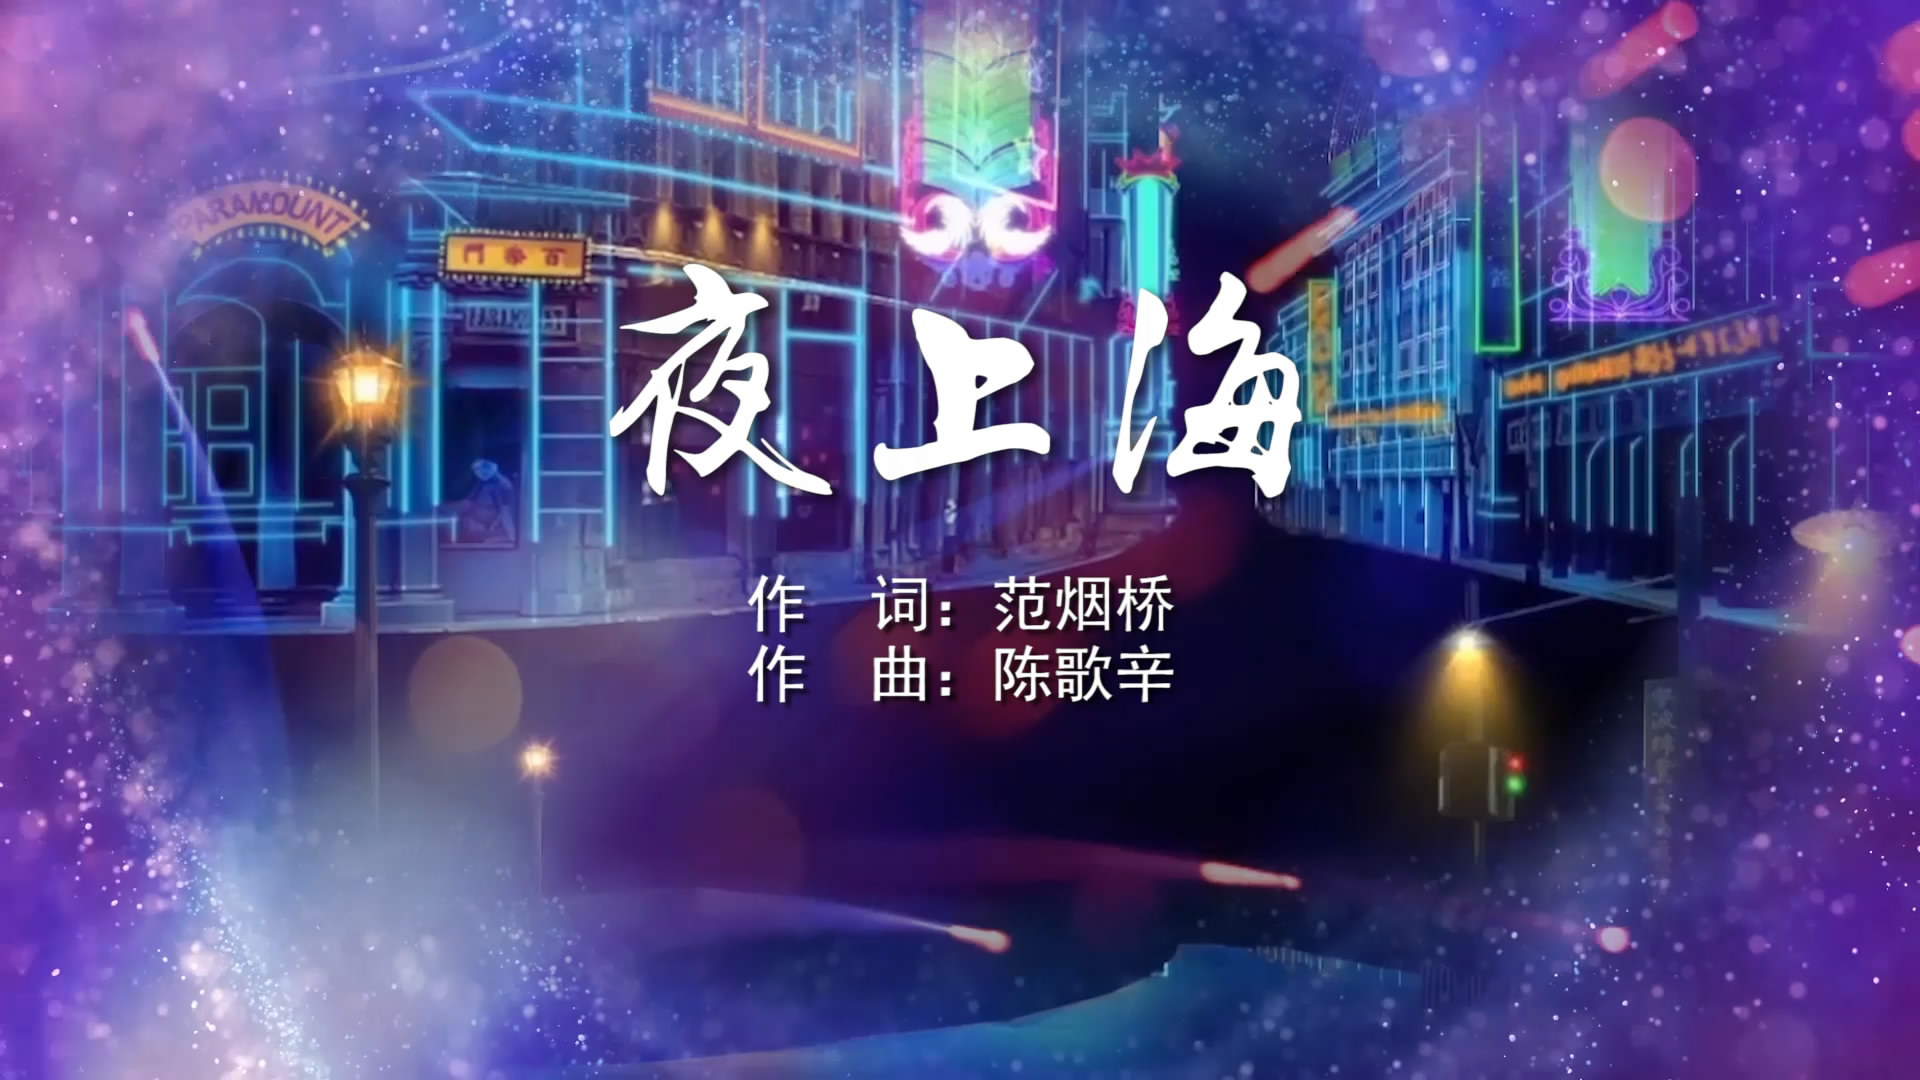 夜上海 周旋MV字幕版配乐伴奏舞台演出LED背景视频素材TV